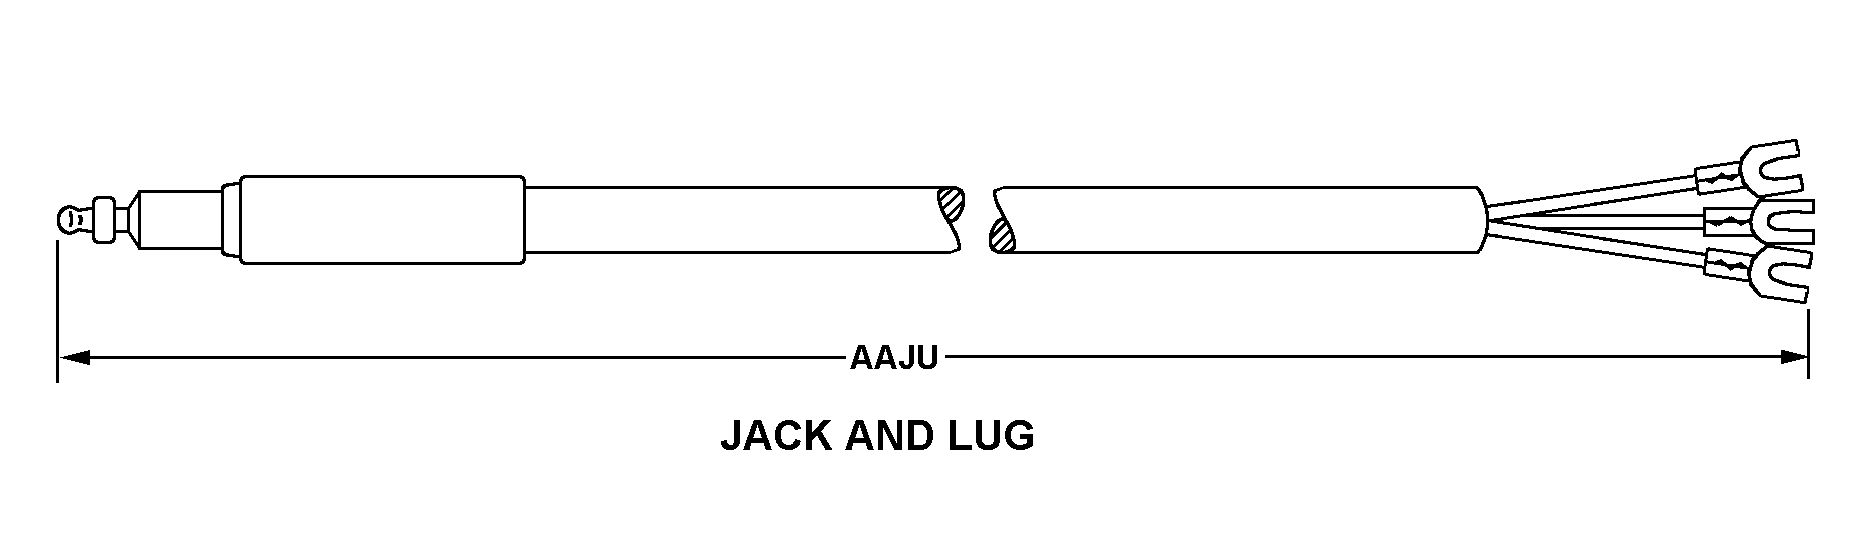 JACK AND LUG style nsn 6150-01-156-6163